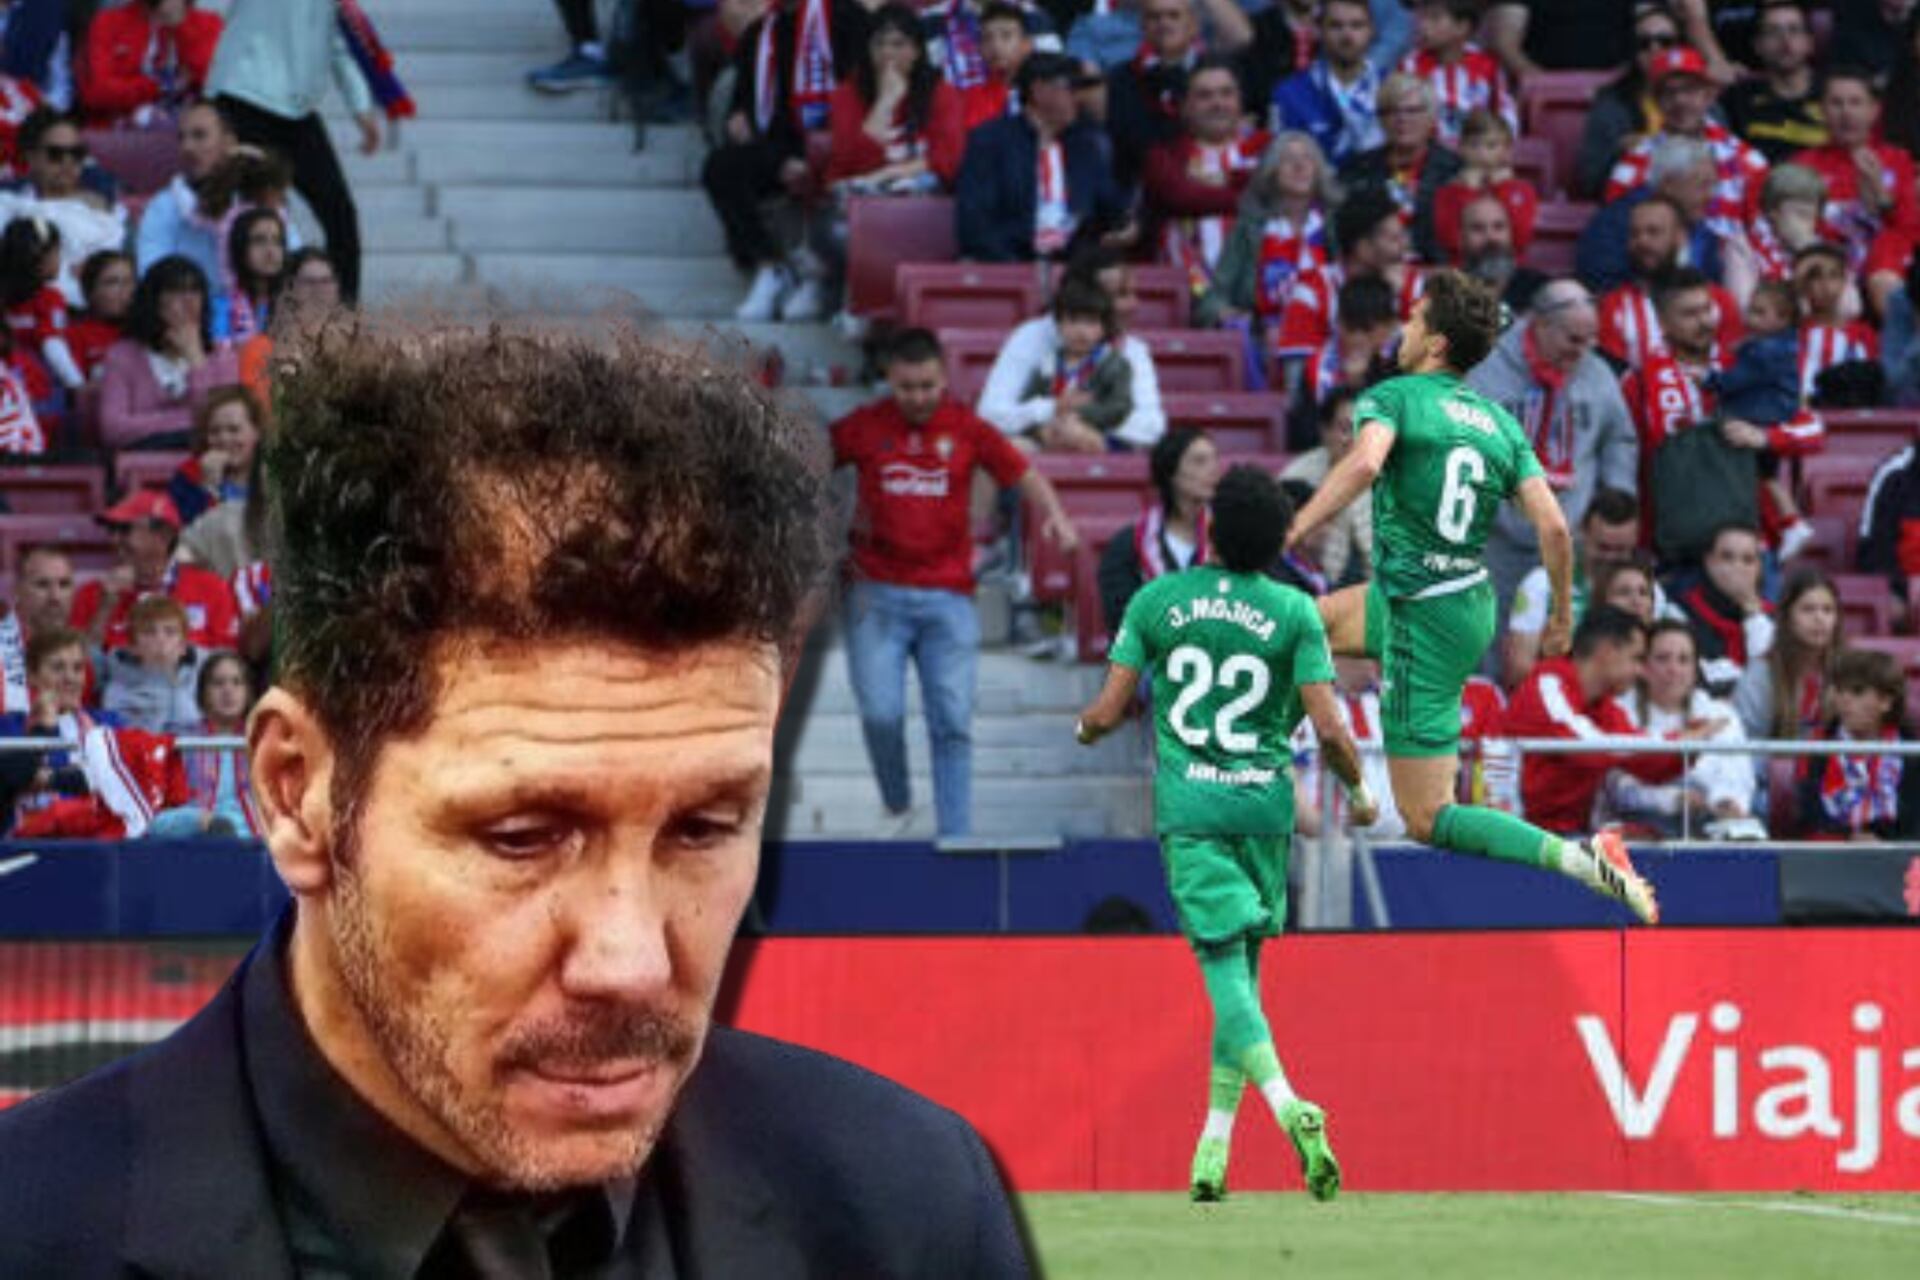 (VIDEO) ¿Ya no quieren a Simeone? Atleti cayó goleado en casa ante el Osasuna